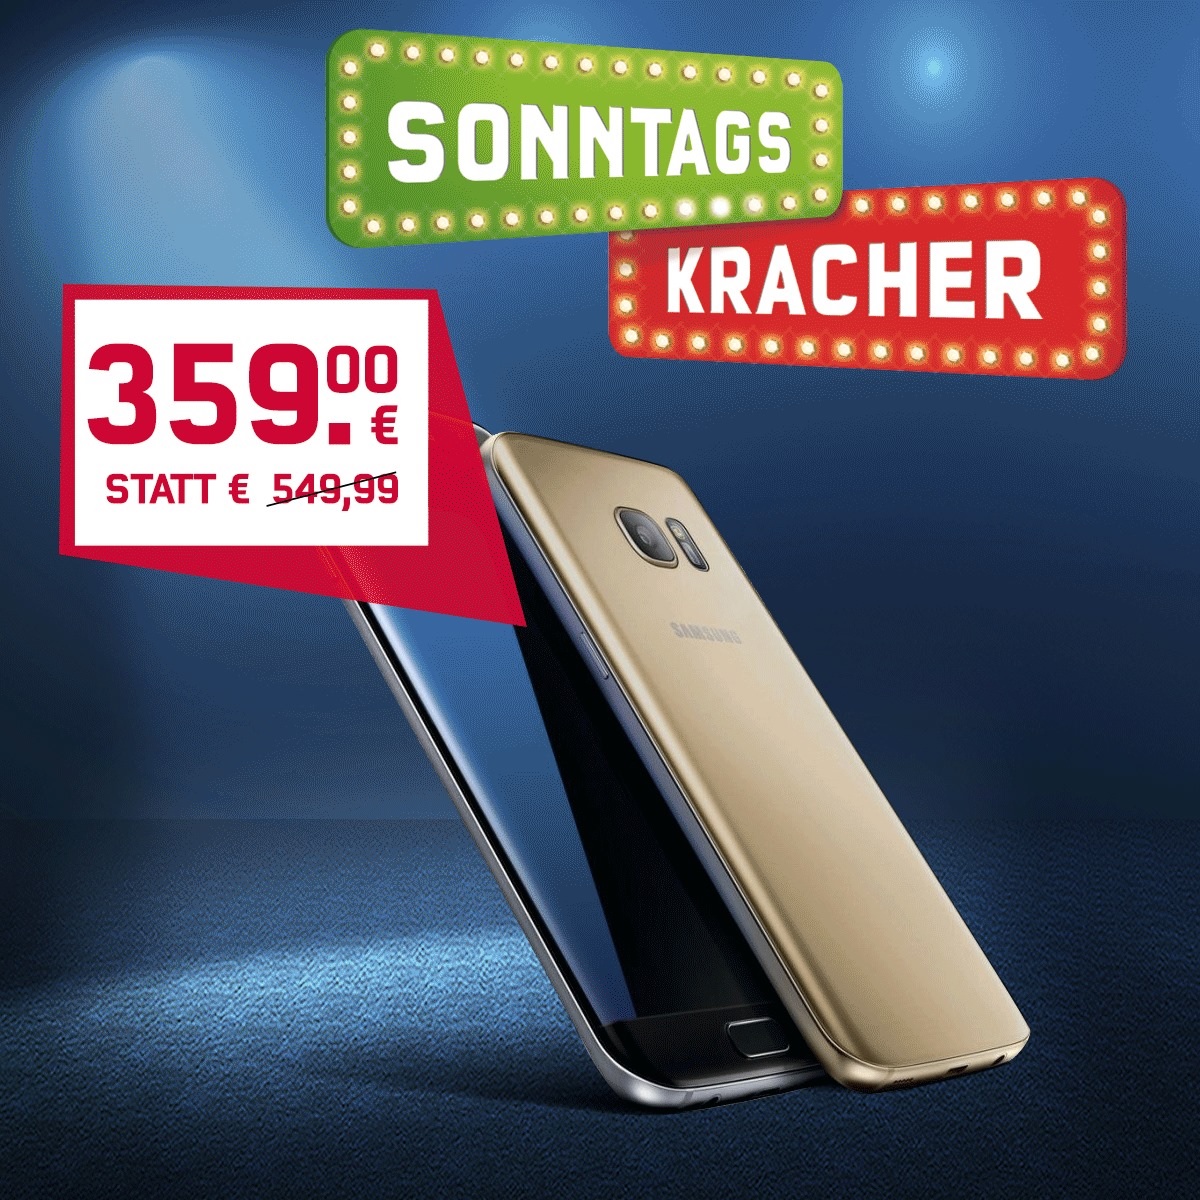 Der mobilcom-debitel „Sonntagskracher“ – Das Samsung Galaxy S6 mit über 190 Euro Preisvorteil